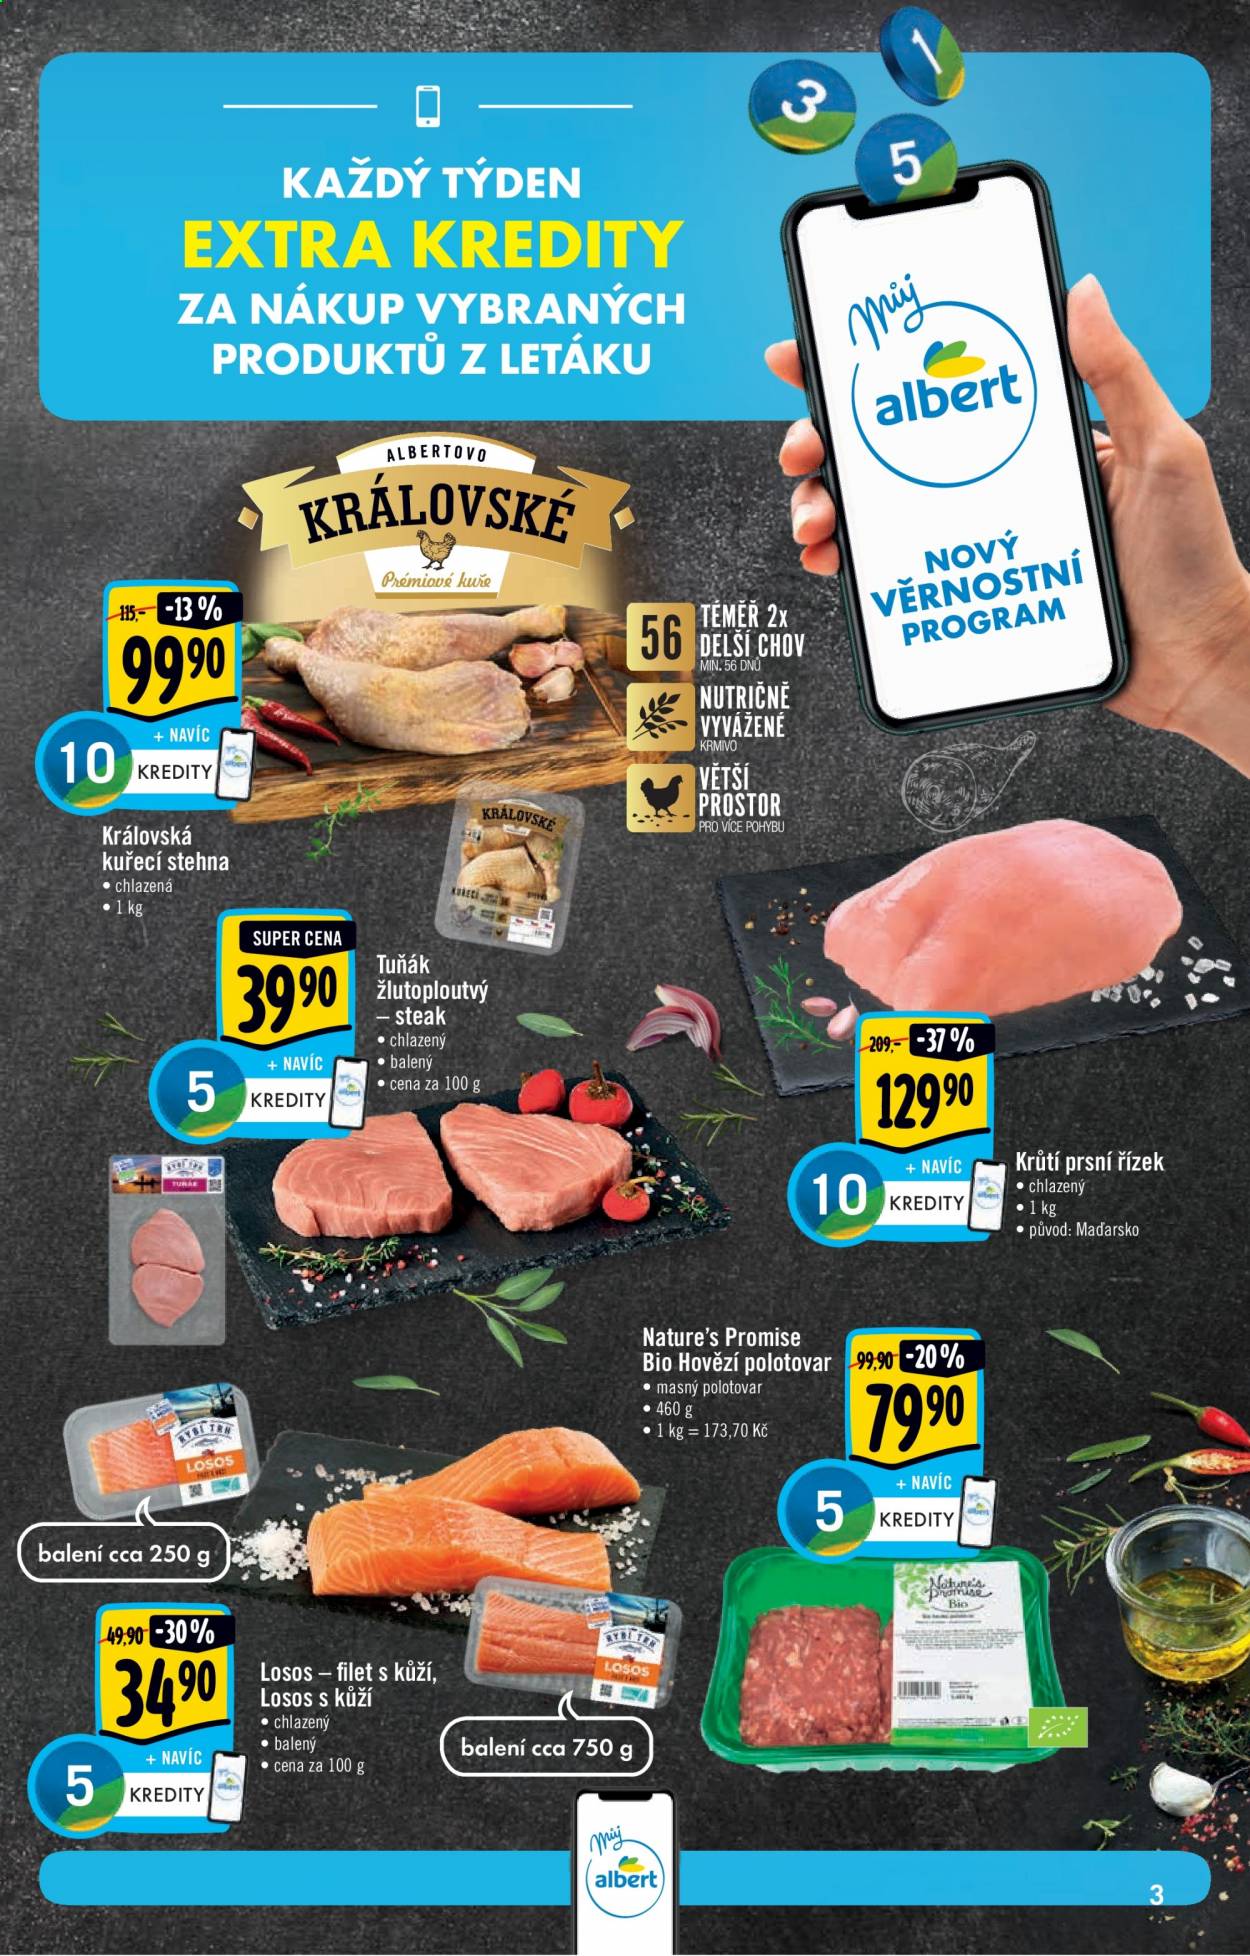 thumbnail - Leták Albert Hypermarket - 14.4.2021 - 20.4.2021 - Produkty v akci - kuřecí maso, kuřecí stehna, steak, tuňák, losos, krůtí maso, krůtí prsní řízky, hovězí maso, Nature's Promise. Strana 3.